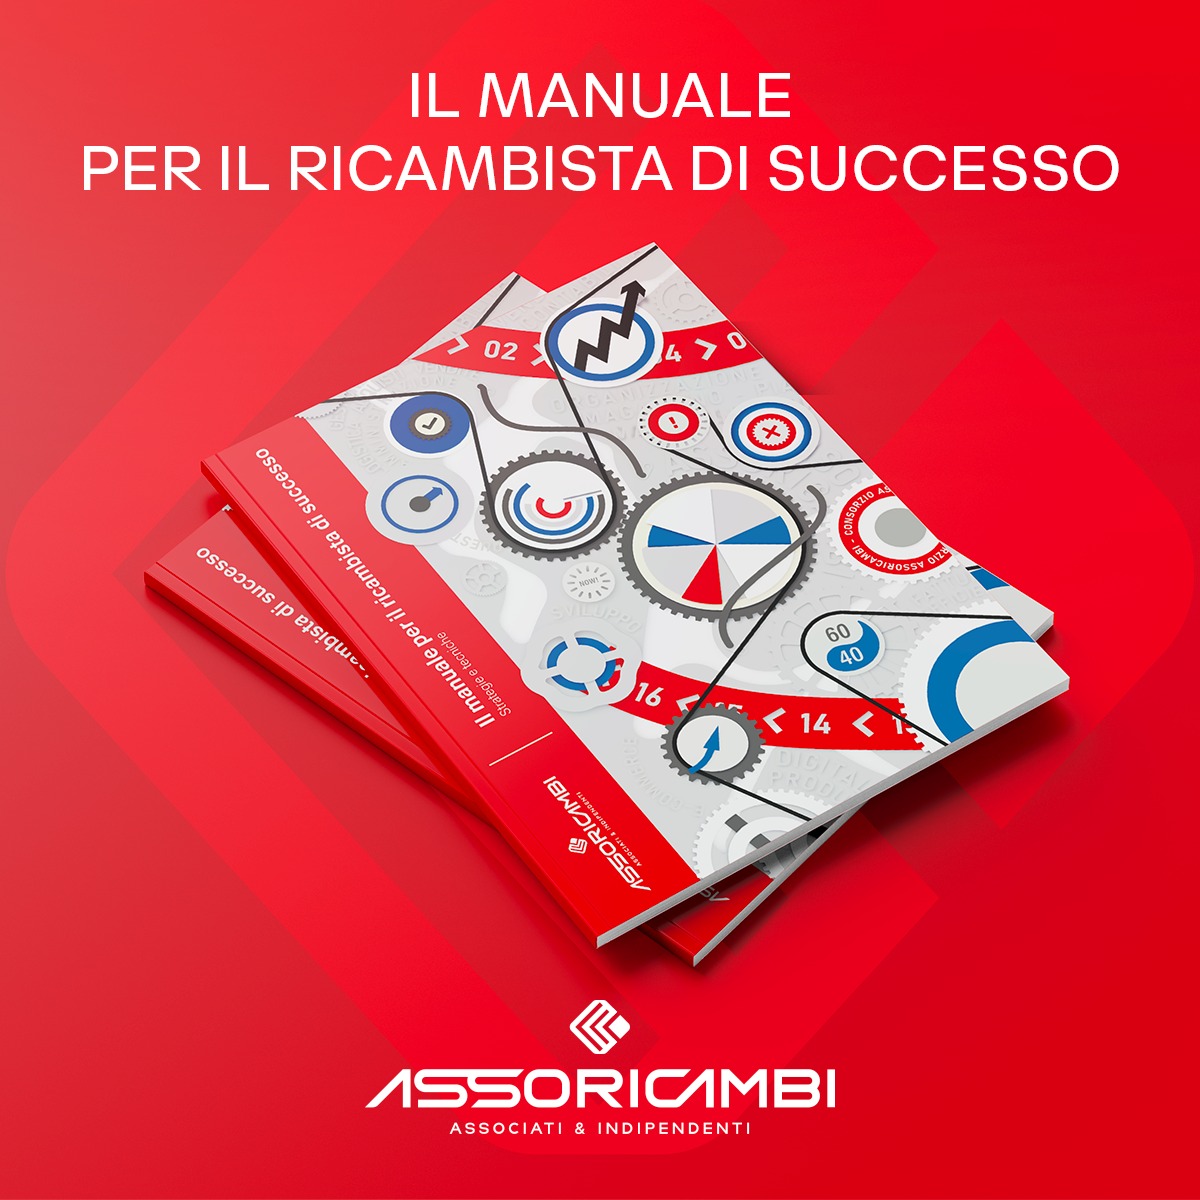 Il Manuale per il ricambista di successo: le best practices di Asso Ricambi.